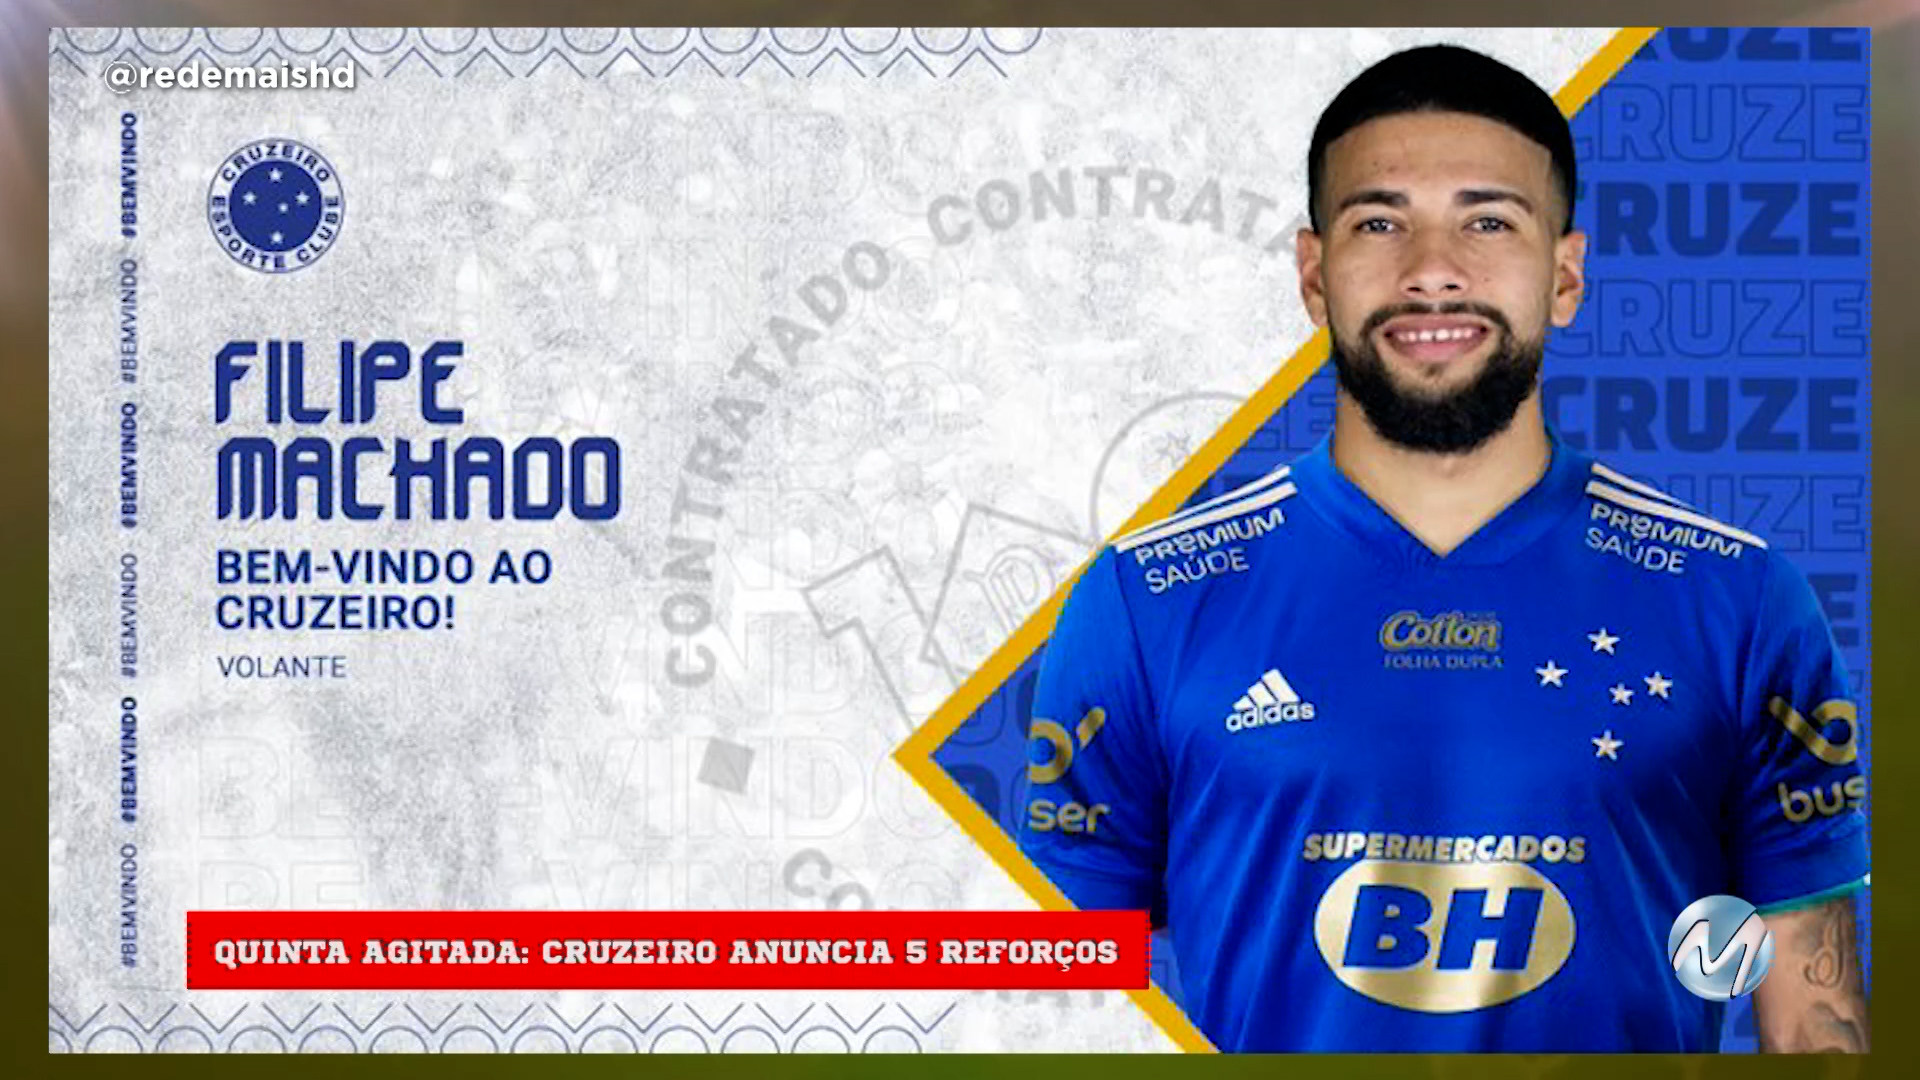 Conheça os reforços do Cruzeiro